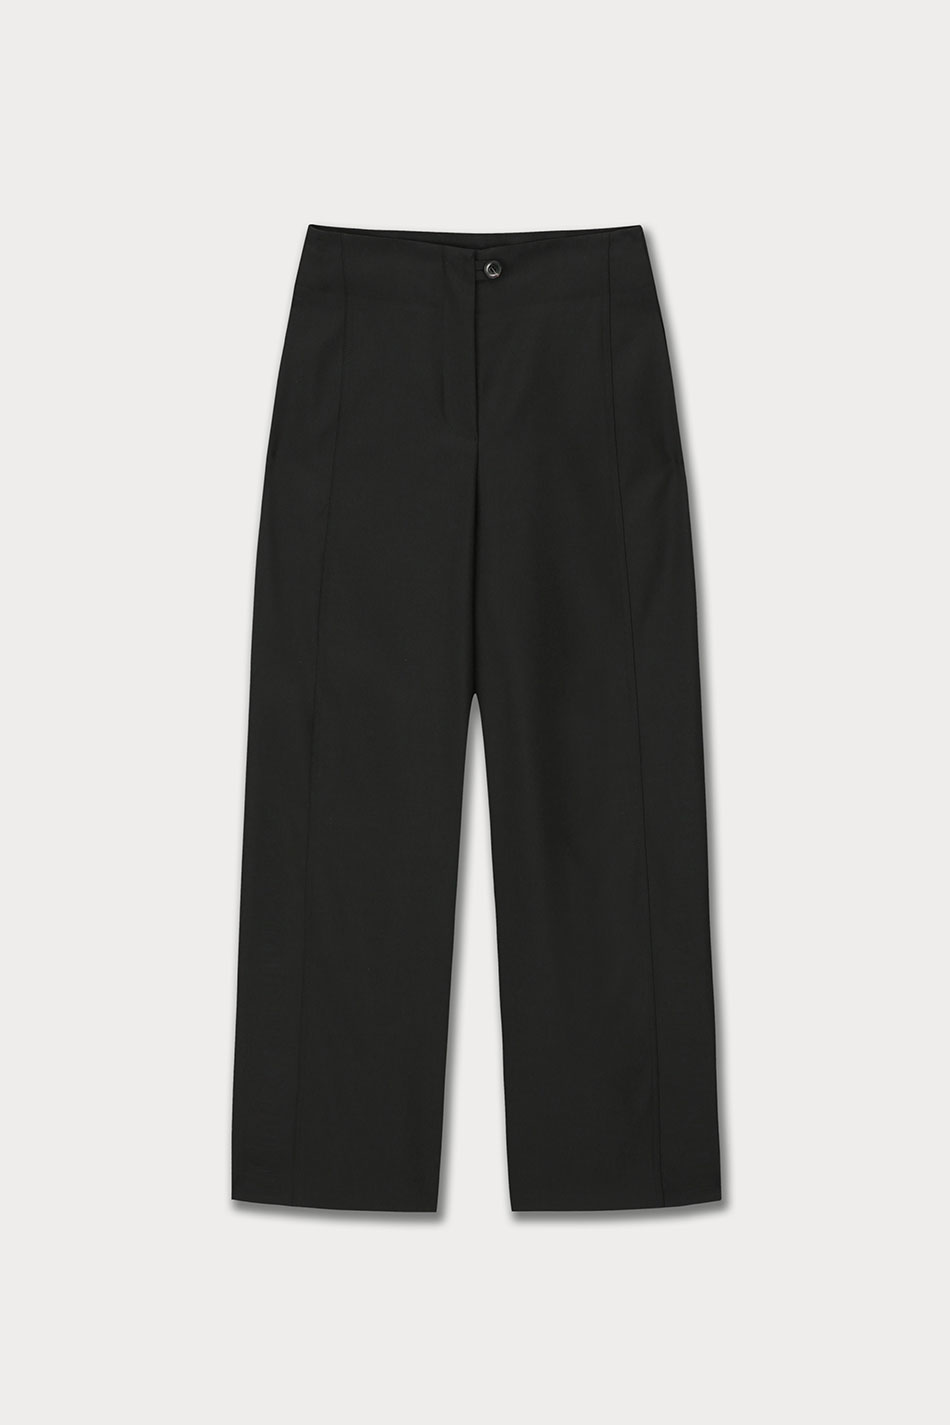 Arch Wool Pants (Black)